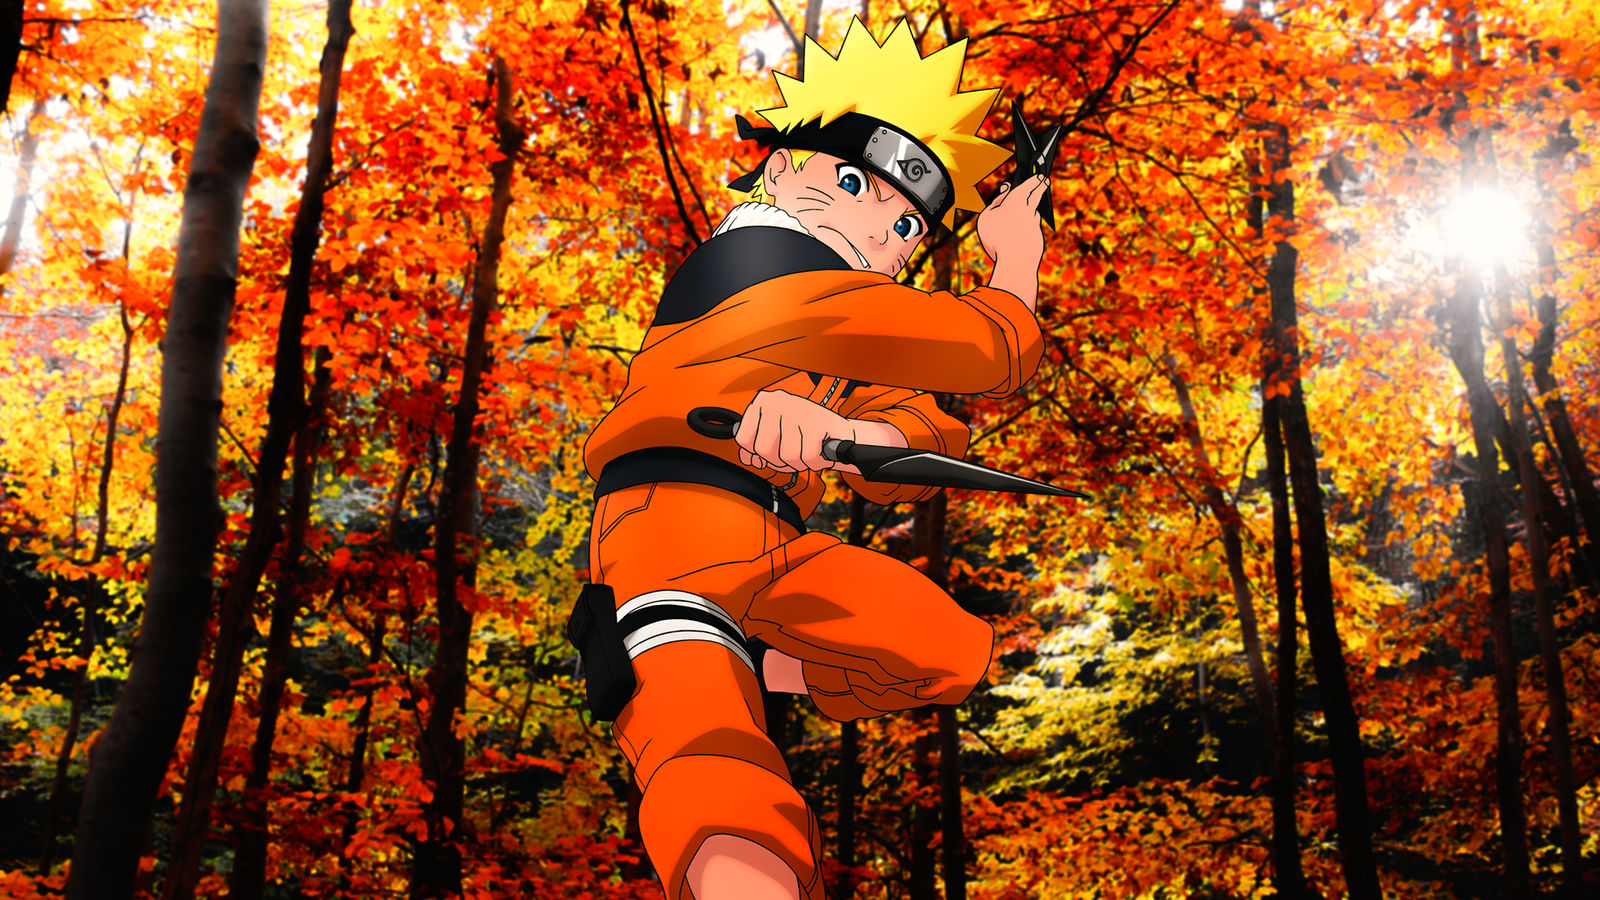 Chúng tôi tự hào giới thiệu đến các fan Naruto bộ sưu tập những bức tranh tuyệt đẹp về Naruto và các nhân vật trong series này. Hãy truy cập và khám phá ngay!